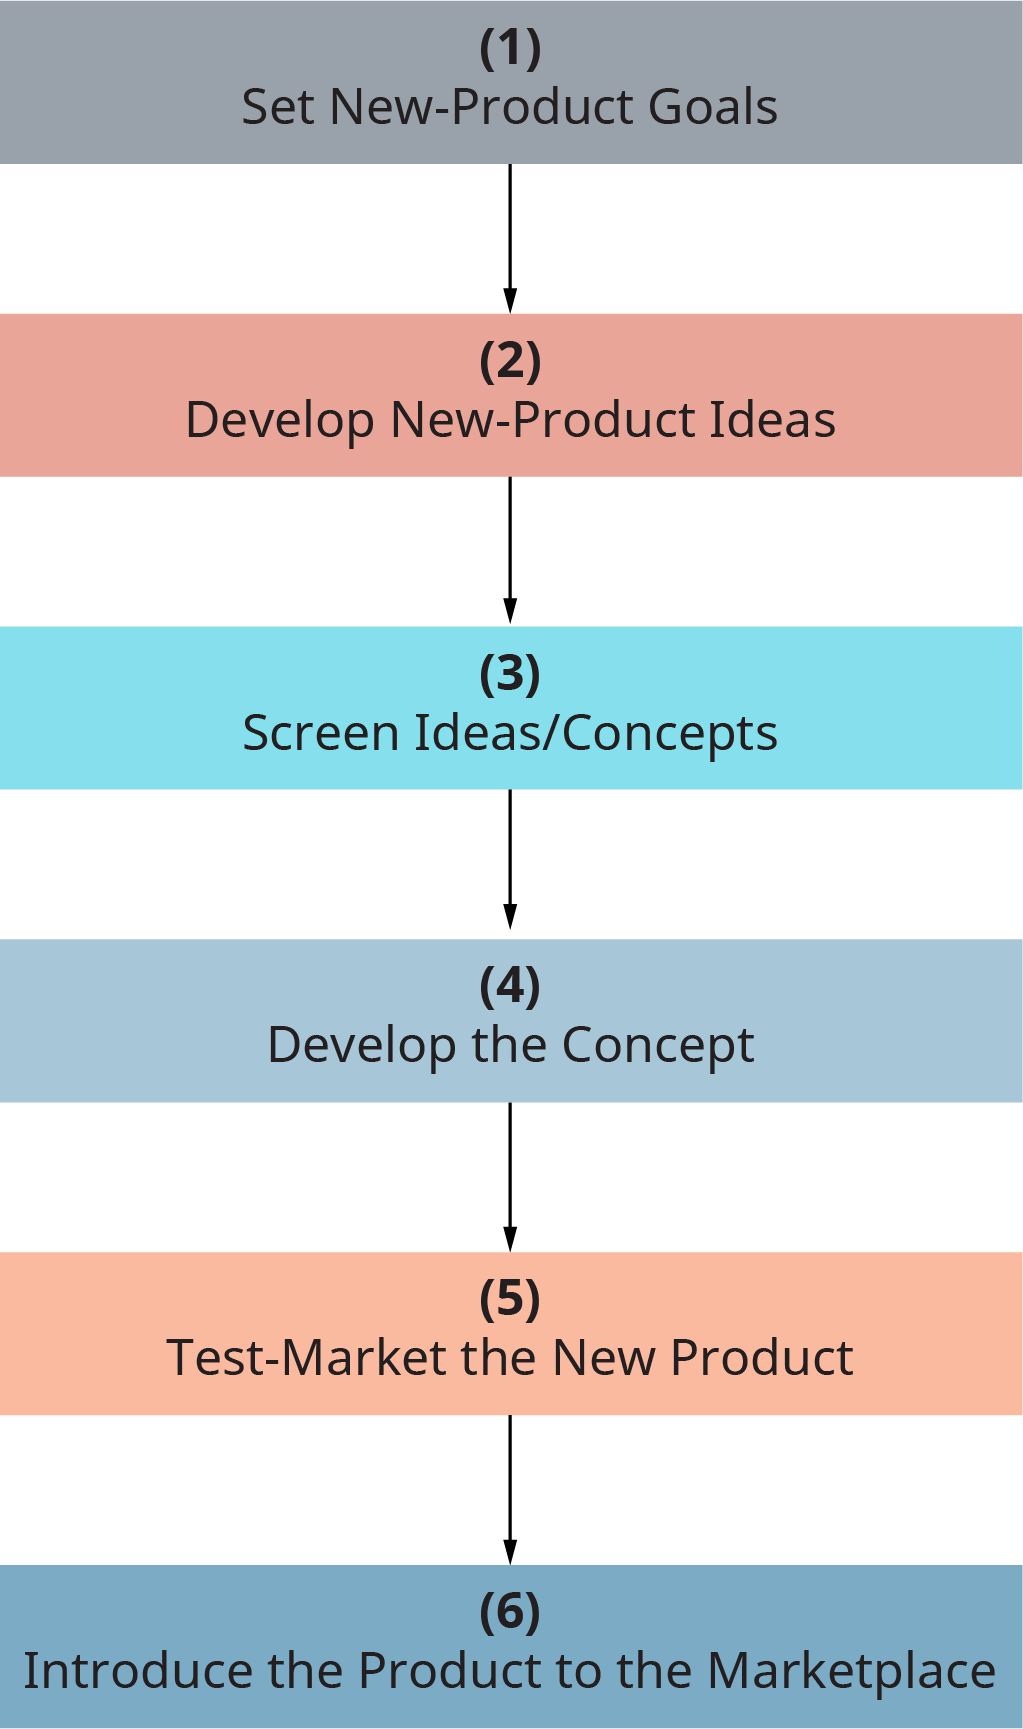 Chaque étape passe à la suivante. Étape 1, définissez de nouveaux objectifs de produit. Étape 2, développer de nouvelles idées de produits. Étape 3, Les idées d'écran réduisent les concepts. Étape 4, développez le concept. Étape 5, tester la commercialisation du nouveau produit. Étape 6, présentez le produit sur le marché.